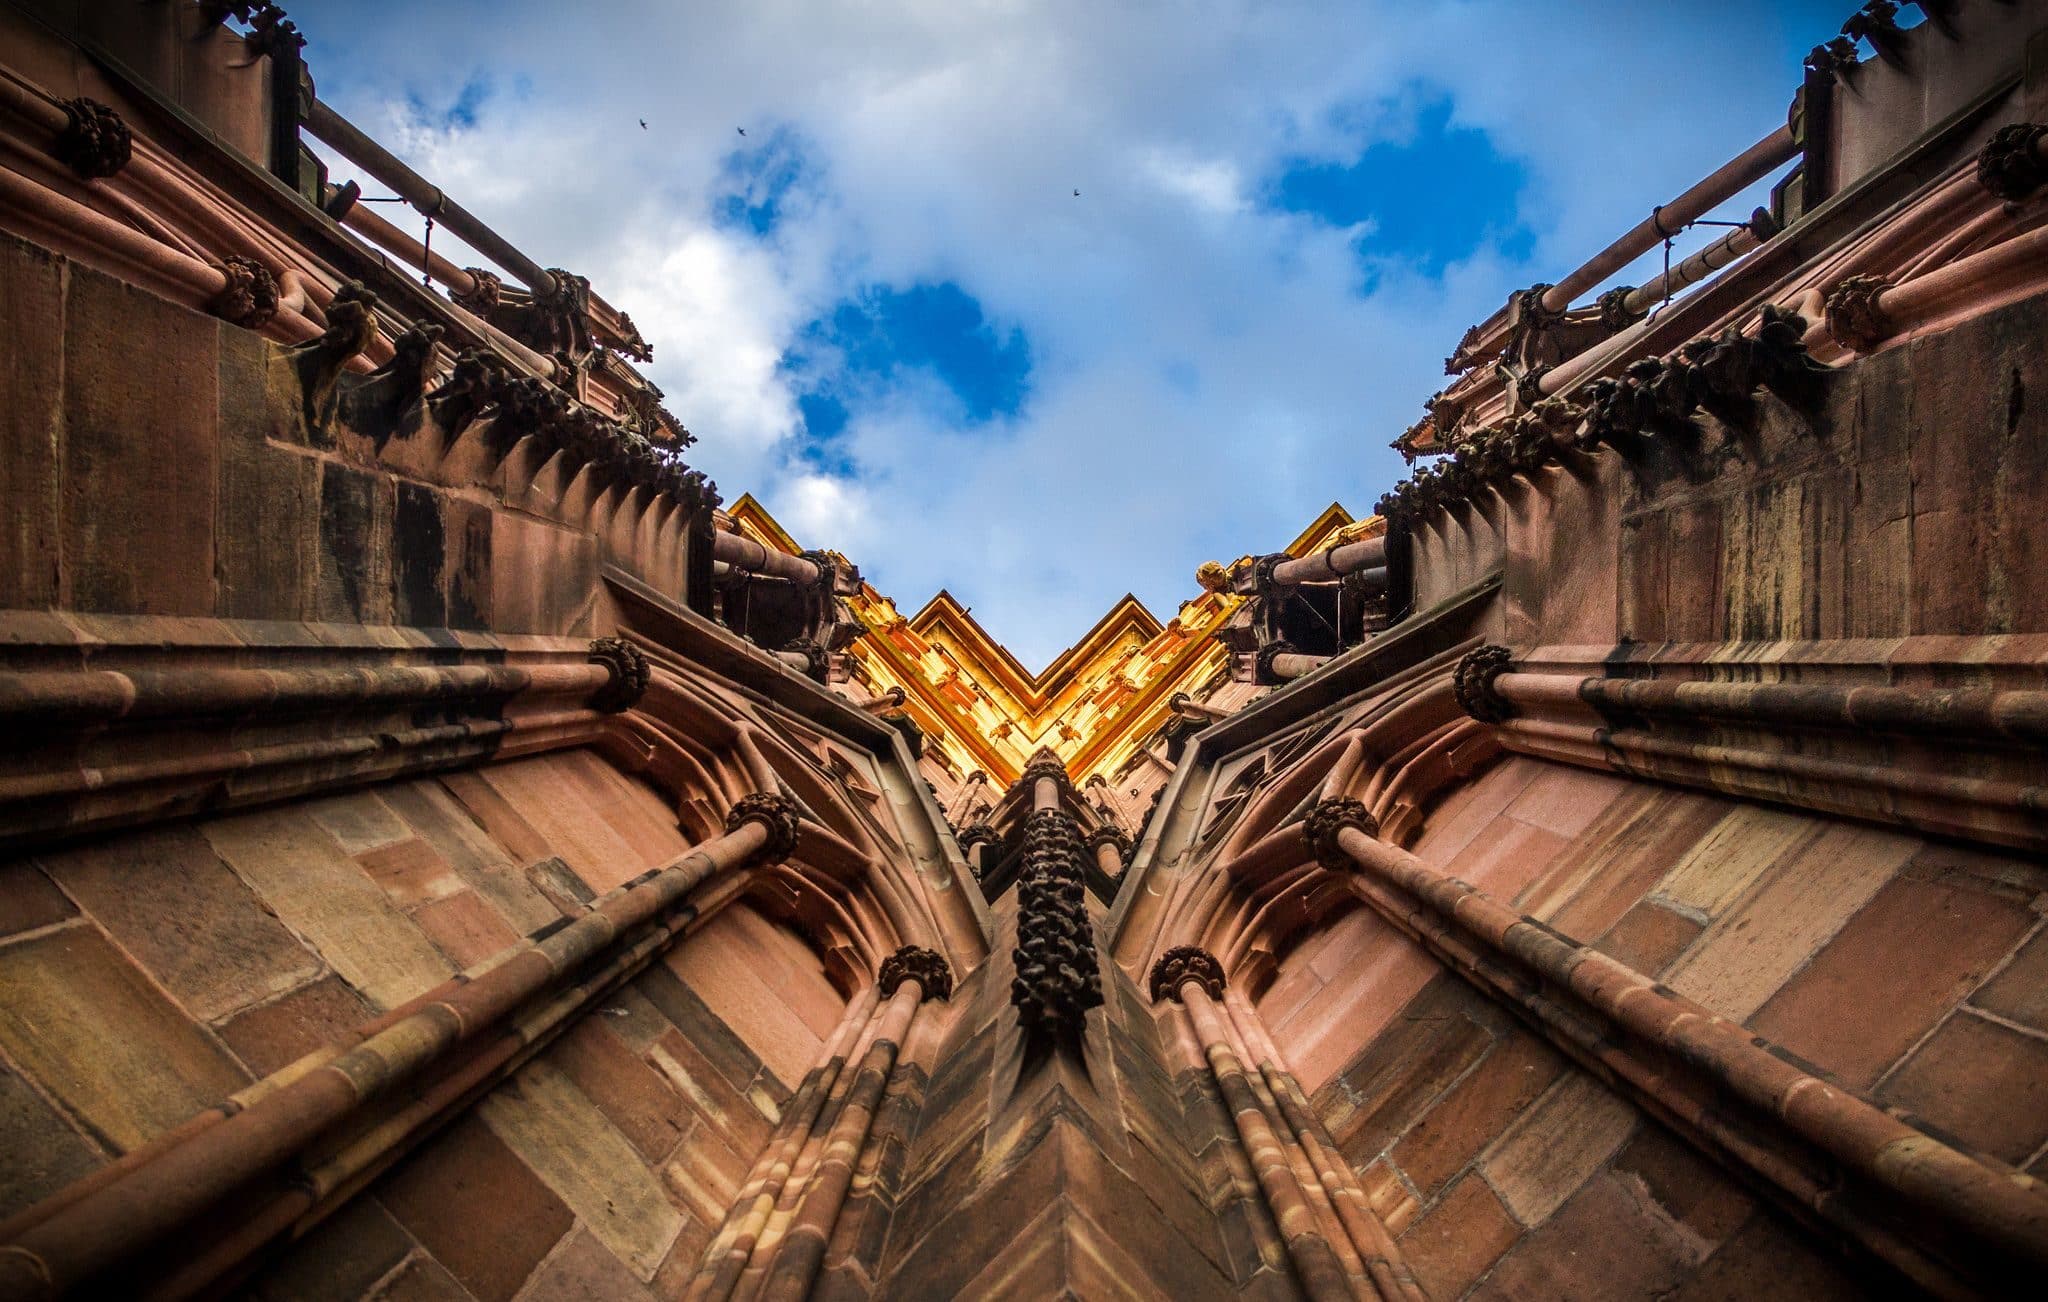 La cathédrale, un drôle de lieu pour une confrontation... (Photo Abdesslam Mirdass / FlickR / cc)